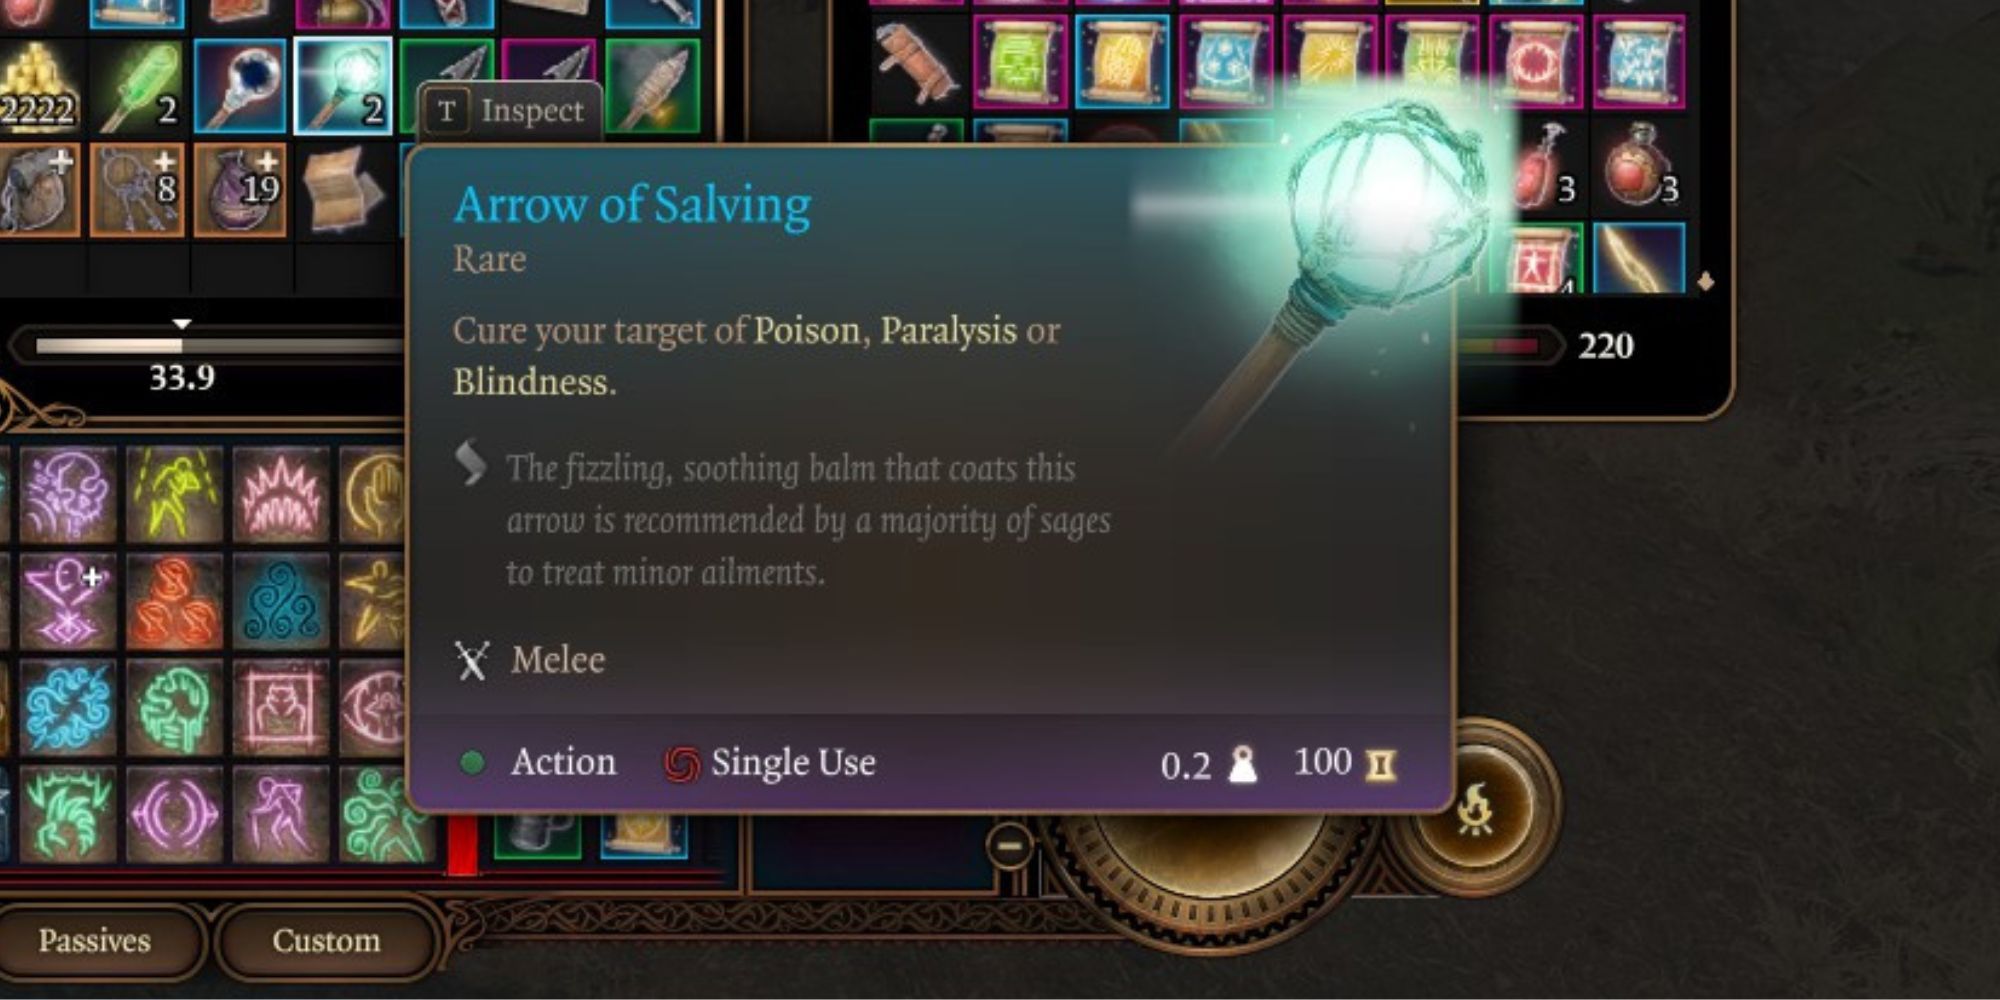 An Arrow of Salving in Baldur's Gate 3